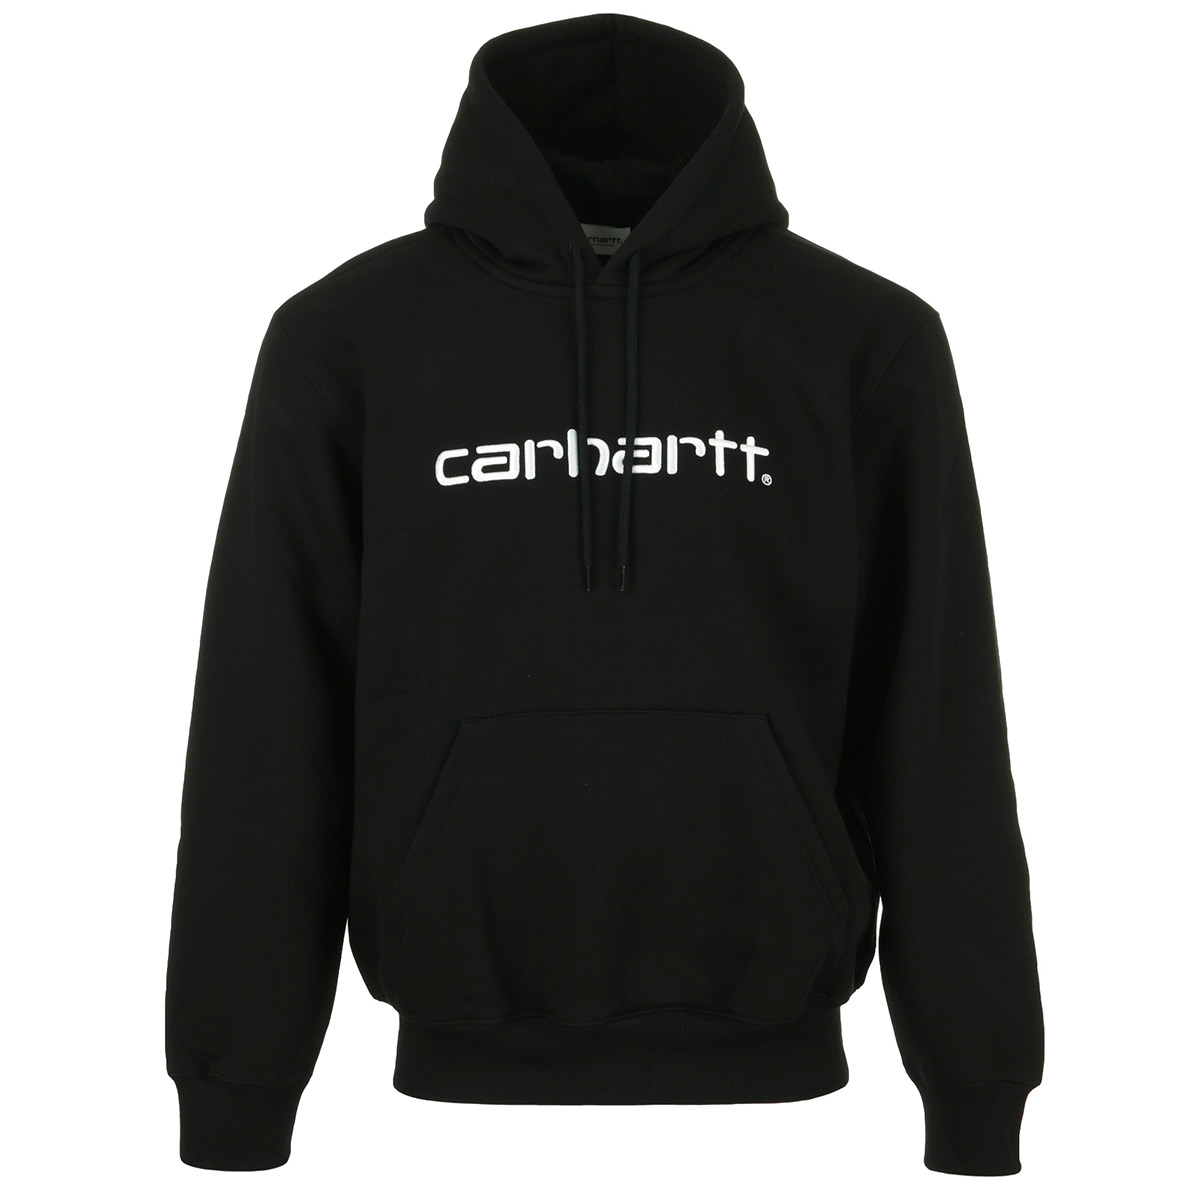 Carhartt "Hooded Sweatshirt"